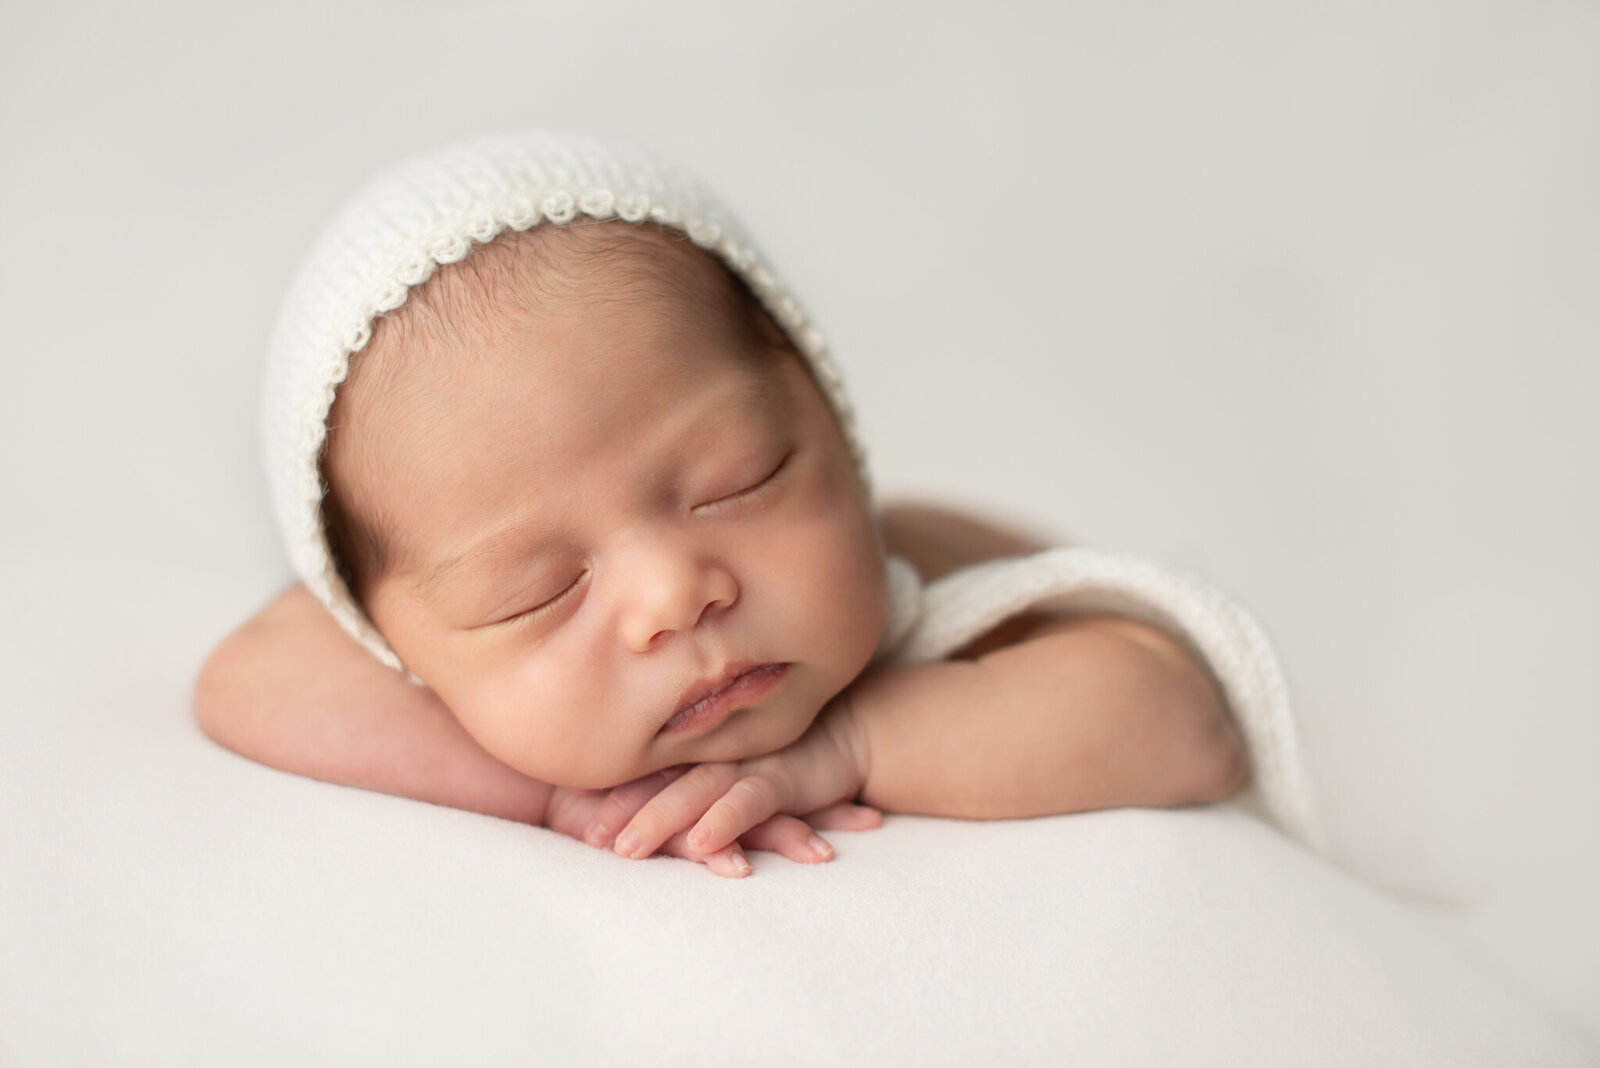 Newborn Baby Poses